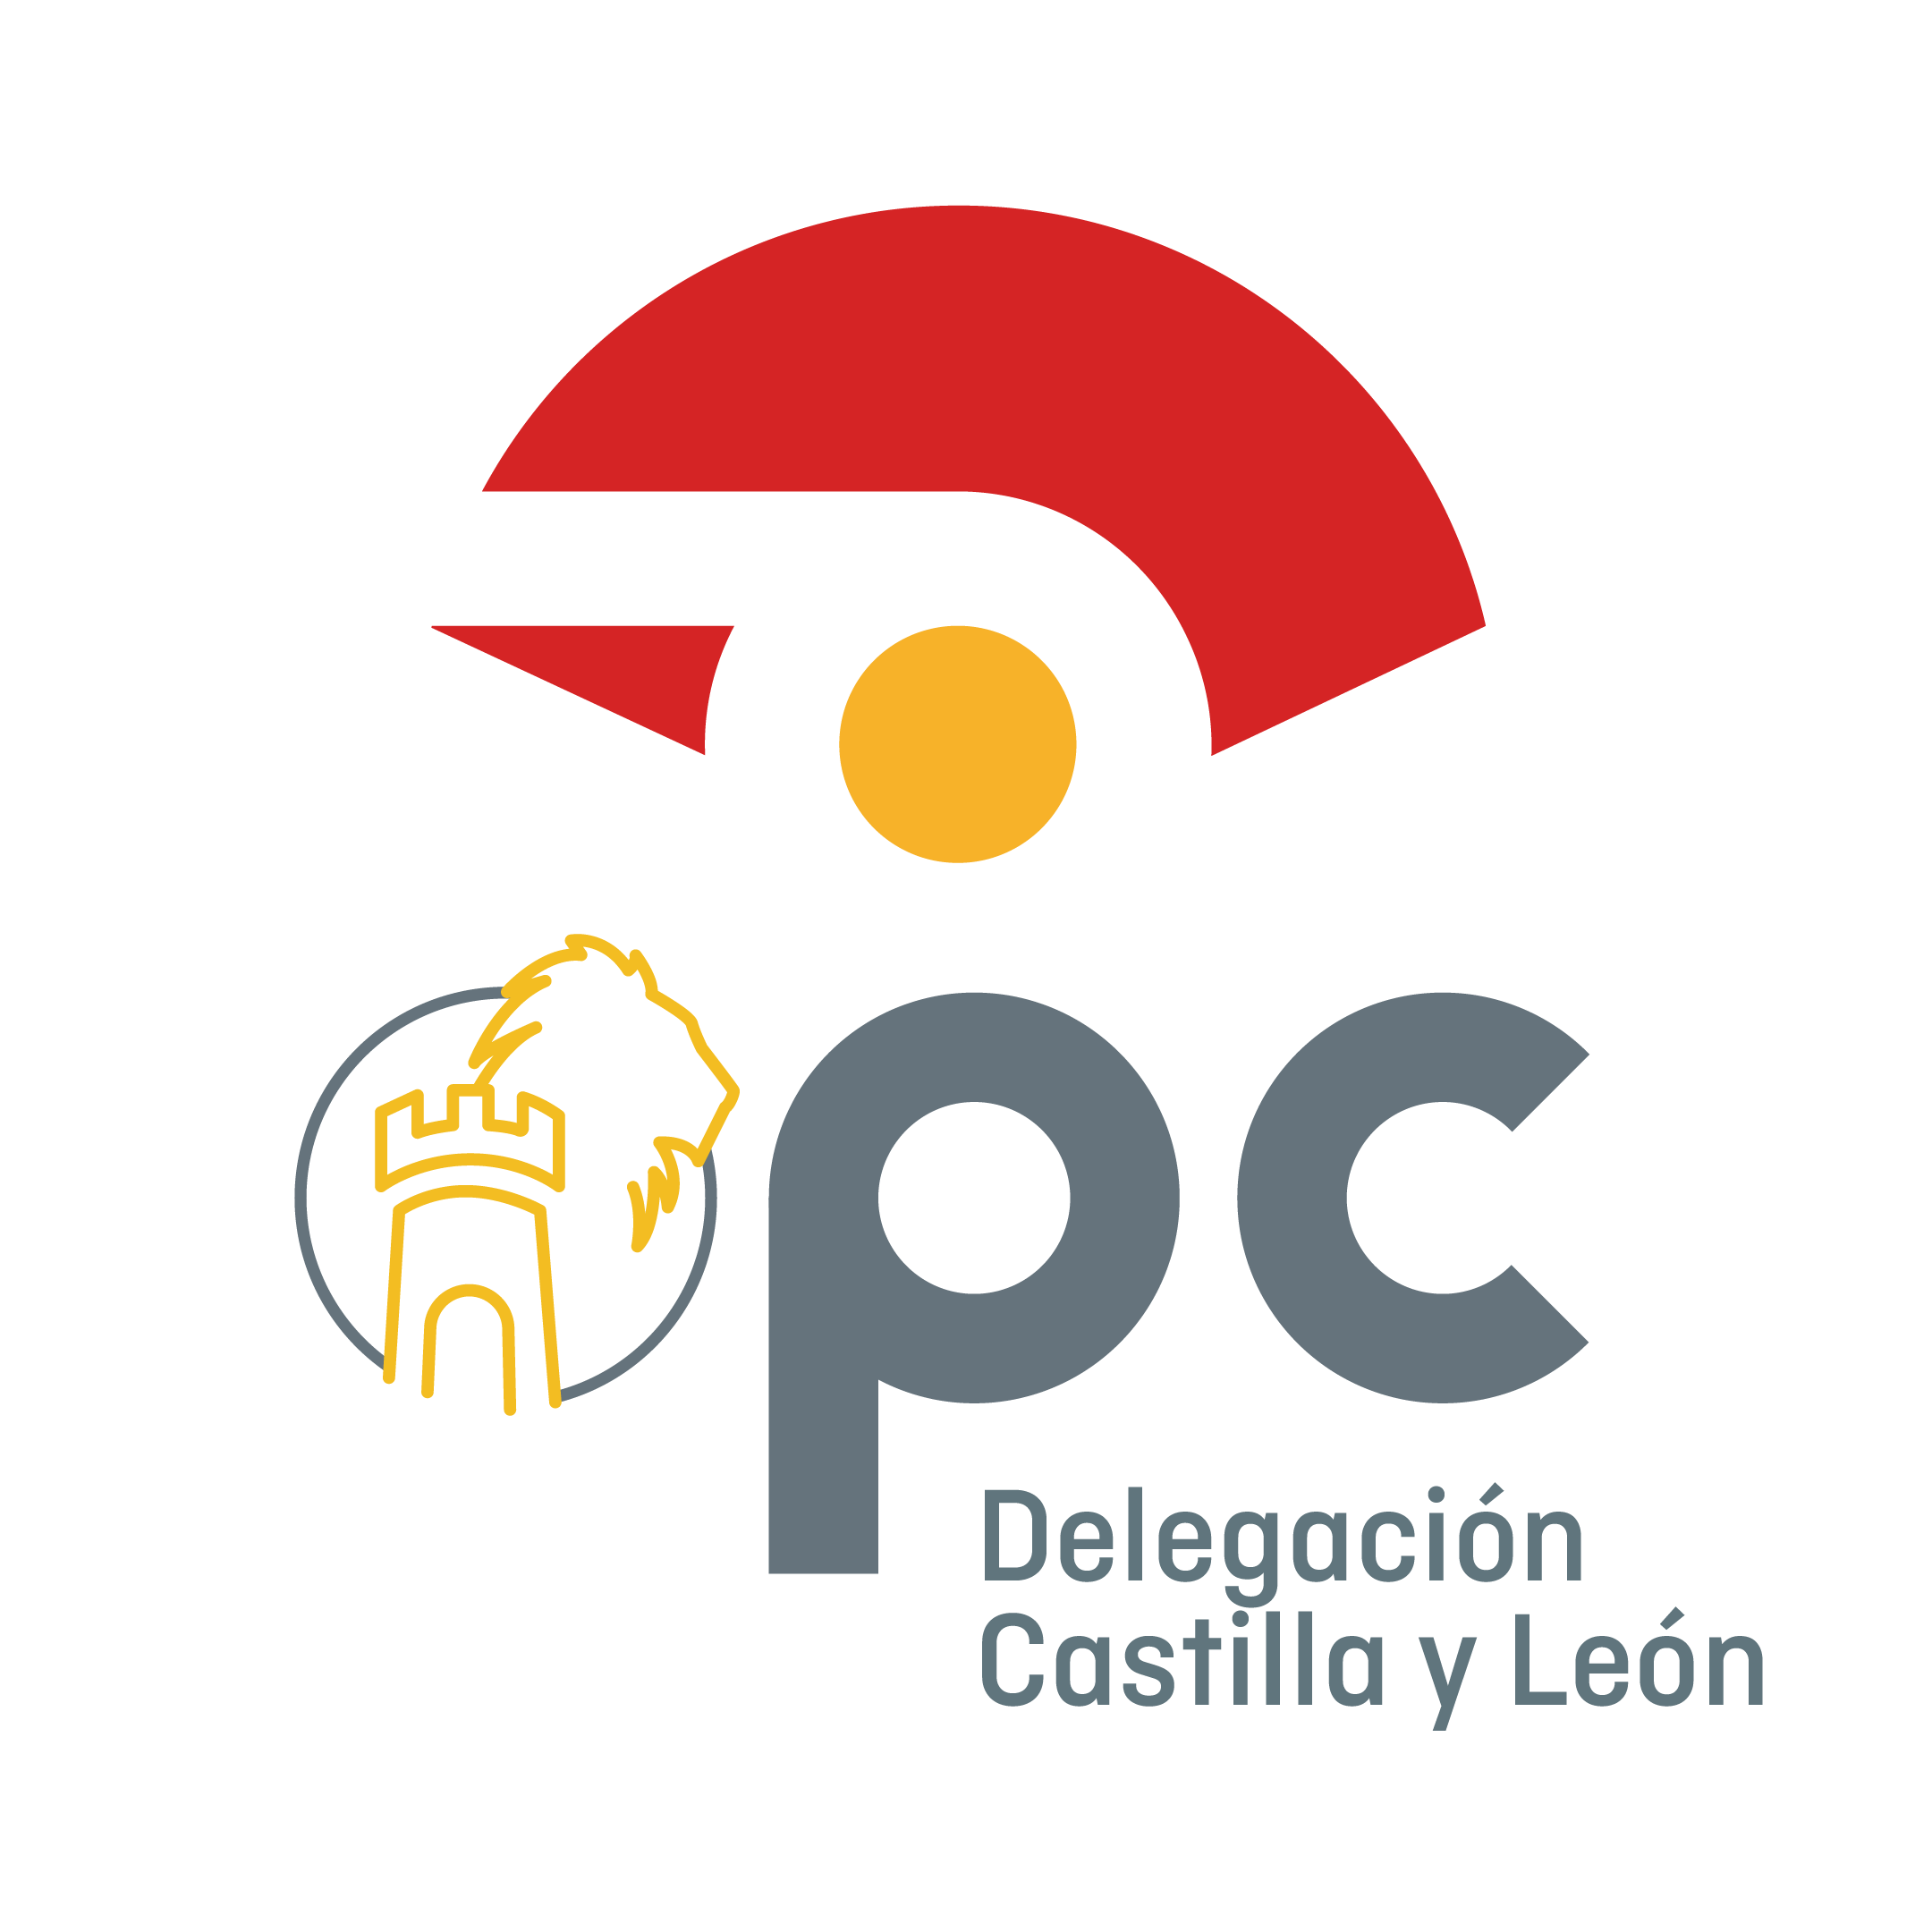 Logotipo delegación OPC Castilla y León vertical